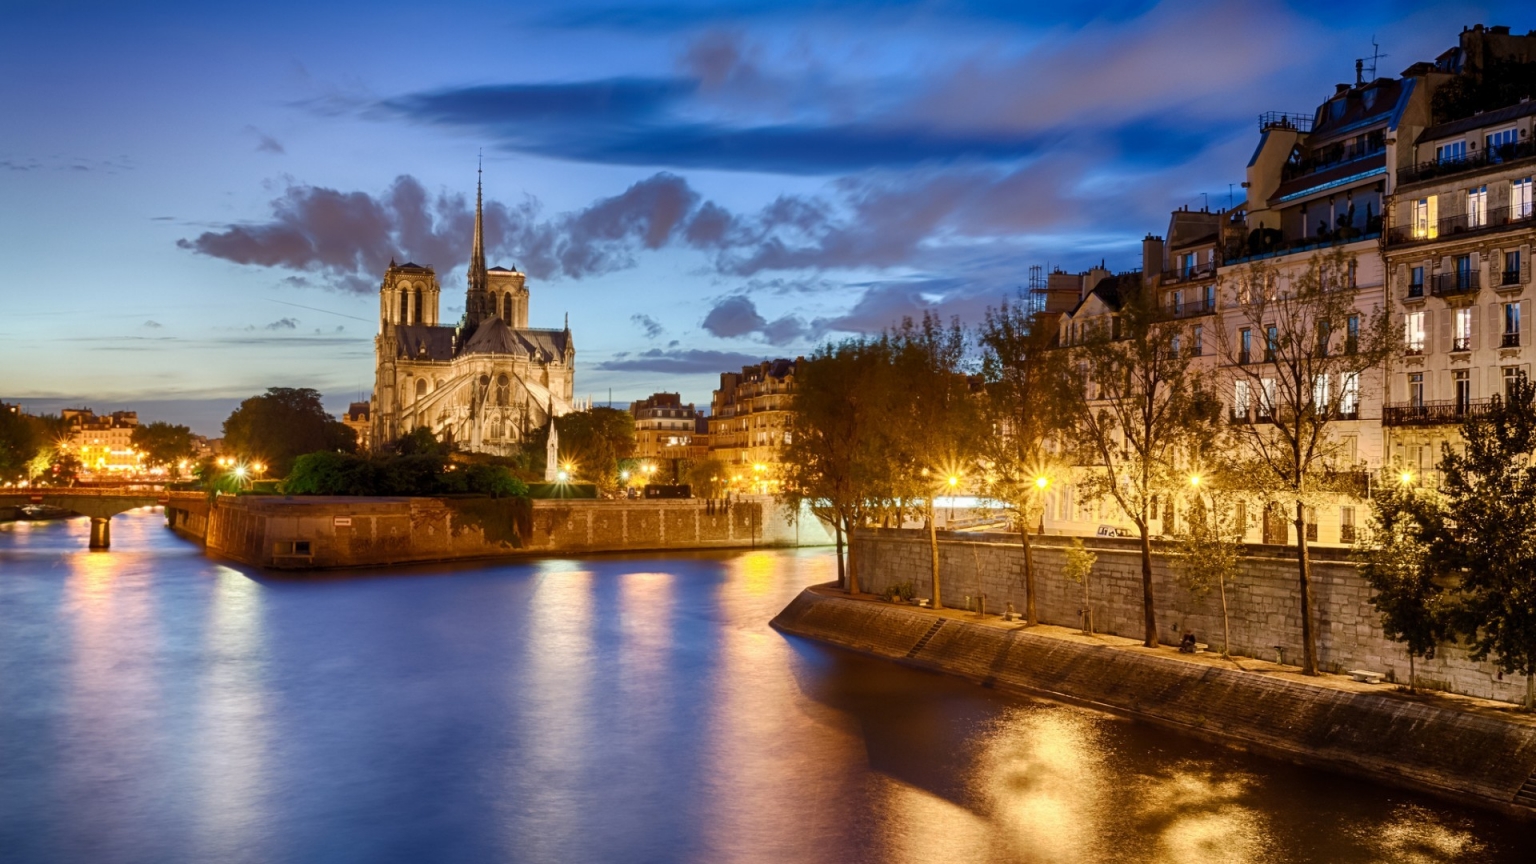 View of Notre Dame de Paris for 1536 x 864 HDTV resolution